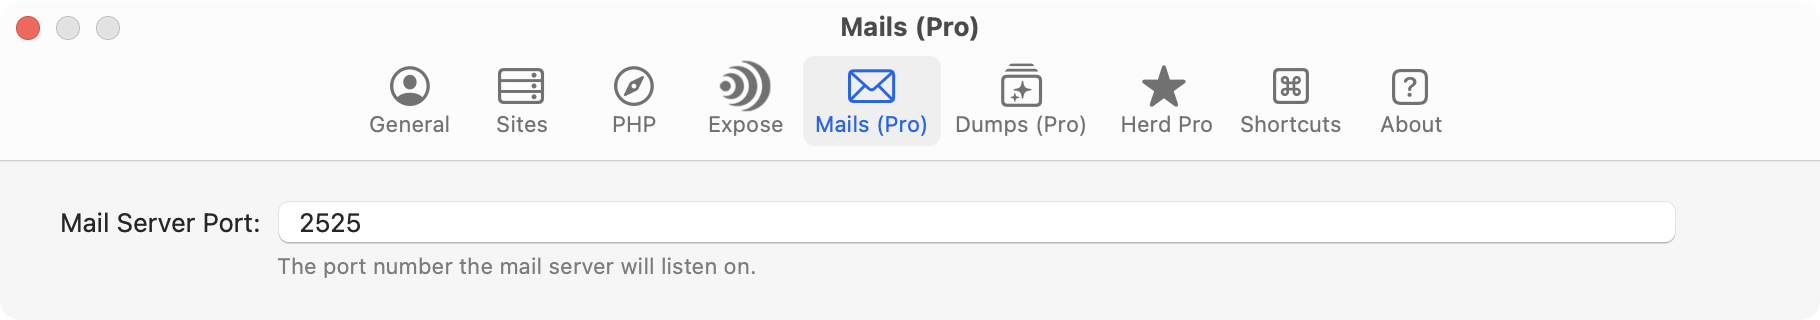 Herd Pro Mail Server Settings